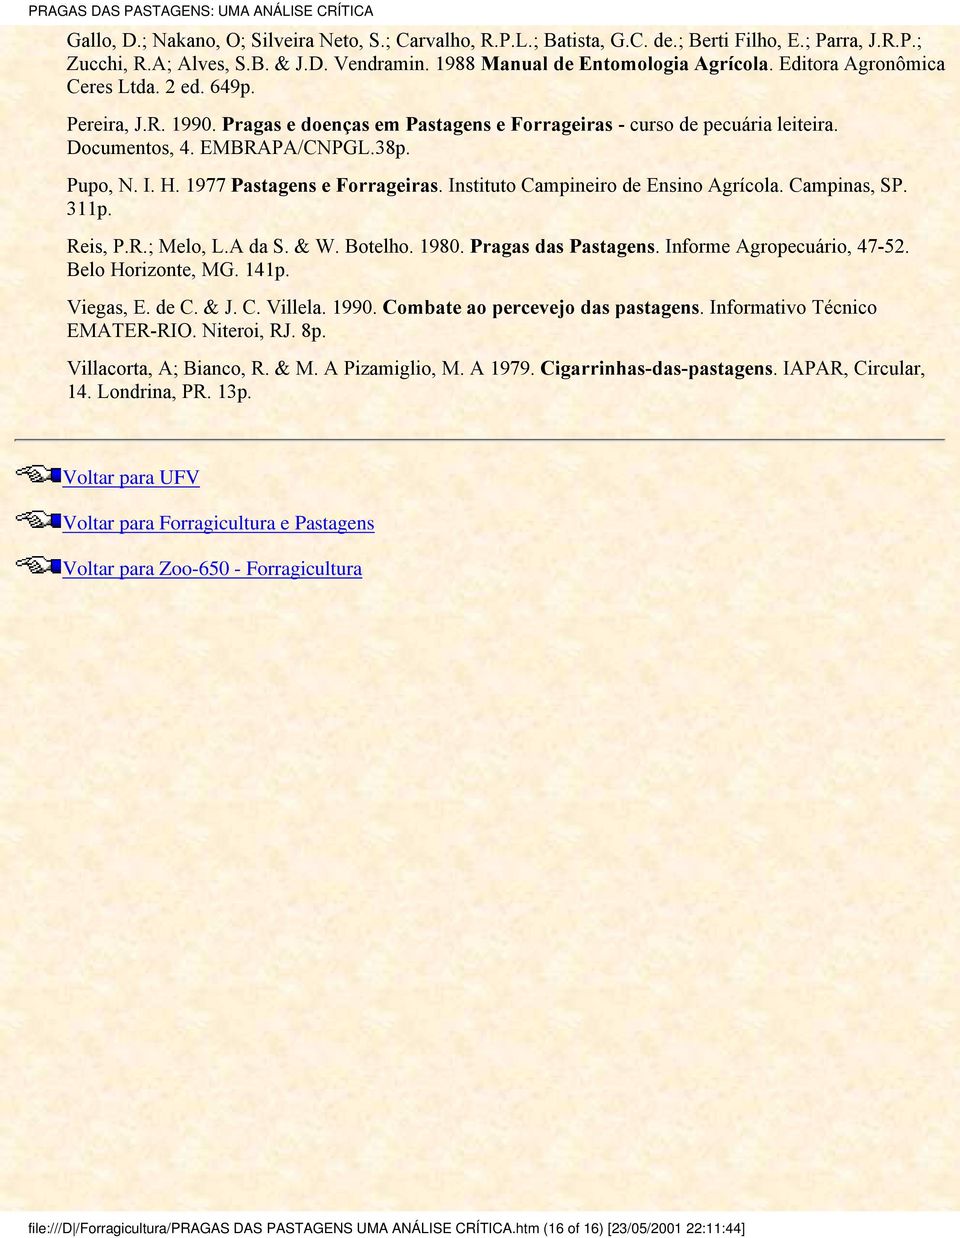 1977 Pastagens e Forrageiras. Instituto Campineiro de Ensino grícola. Campinas, SP. 311p. Reis, P.R.; Melo, L. da S. & W. Botelho. 1980. Pragas das Pastagens. Informe gropecuário, 47-52.